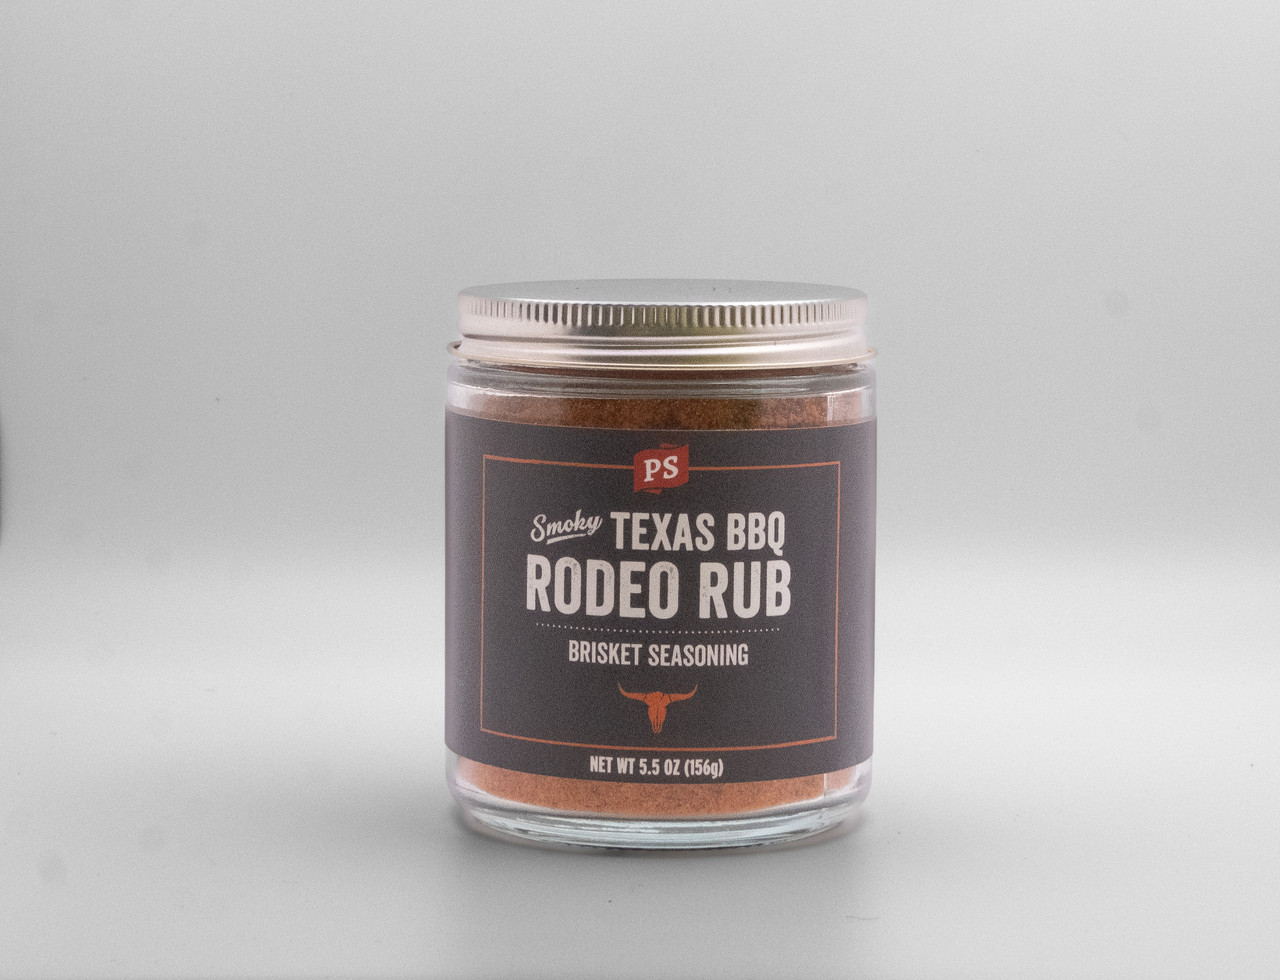 PS Seasoning Rodeo Rub Texas-Style Brisket - Texas BBQ Flavor Rub